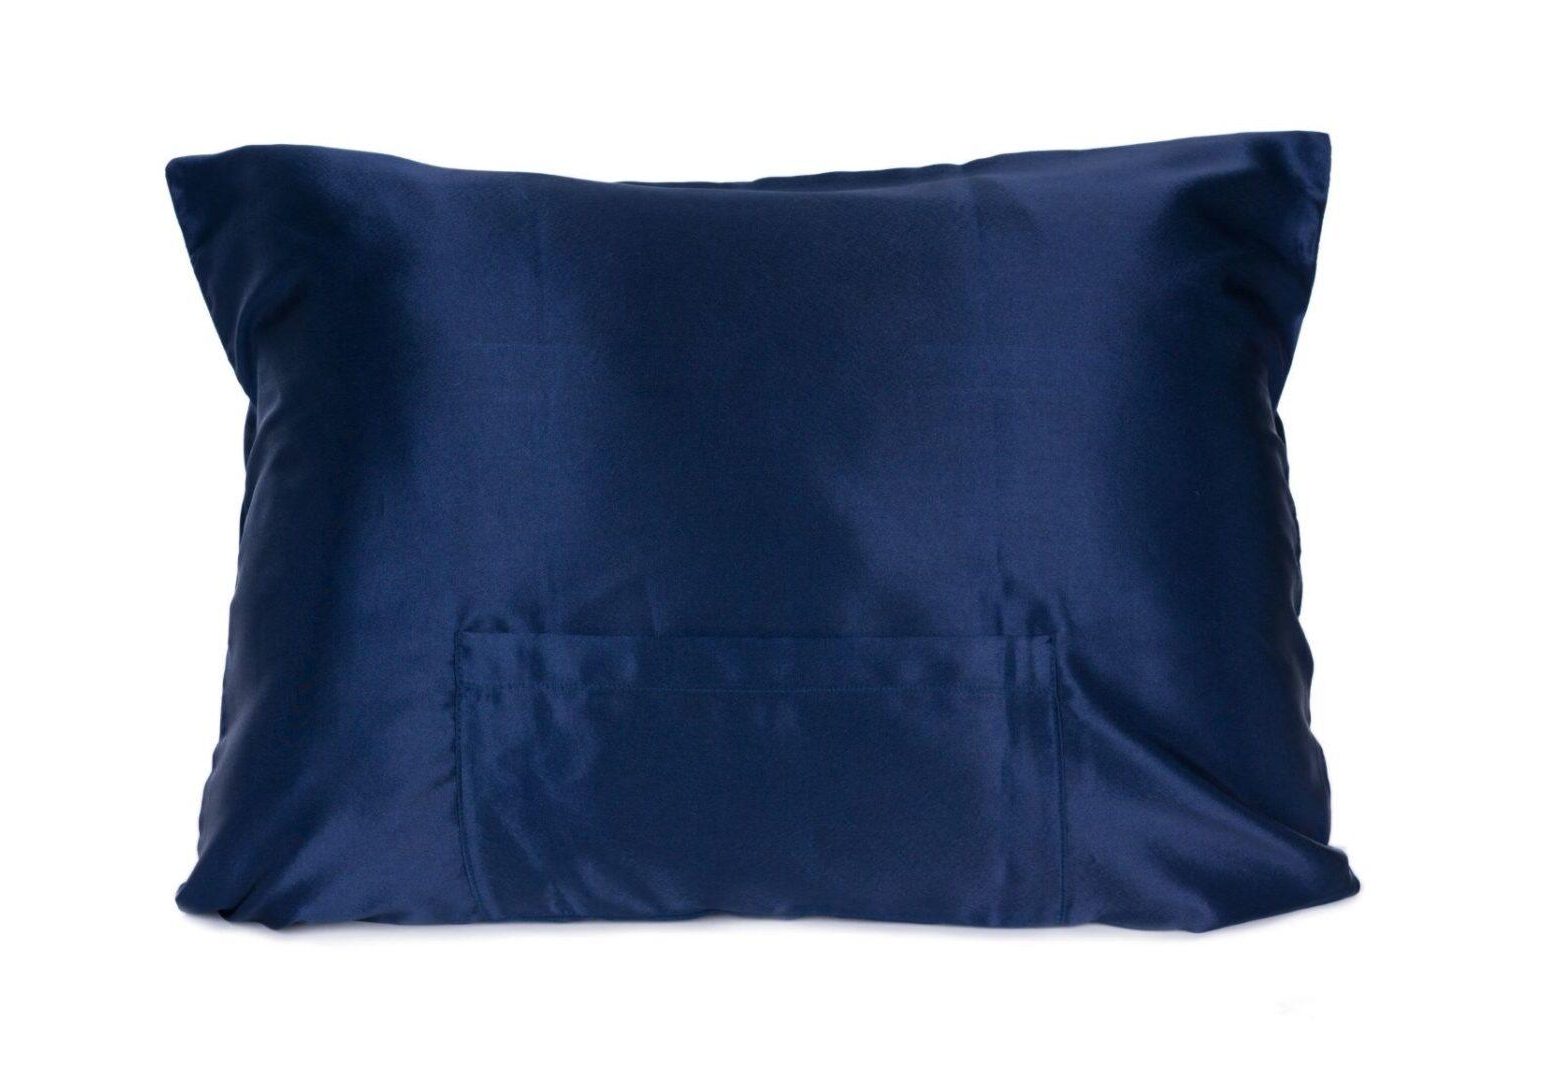 Luxe Satin Pillowcase